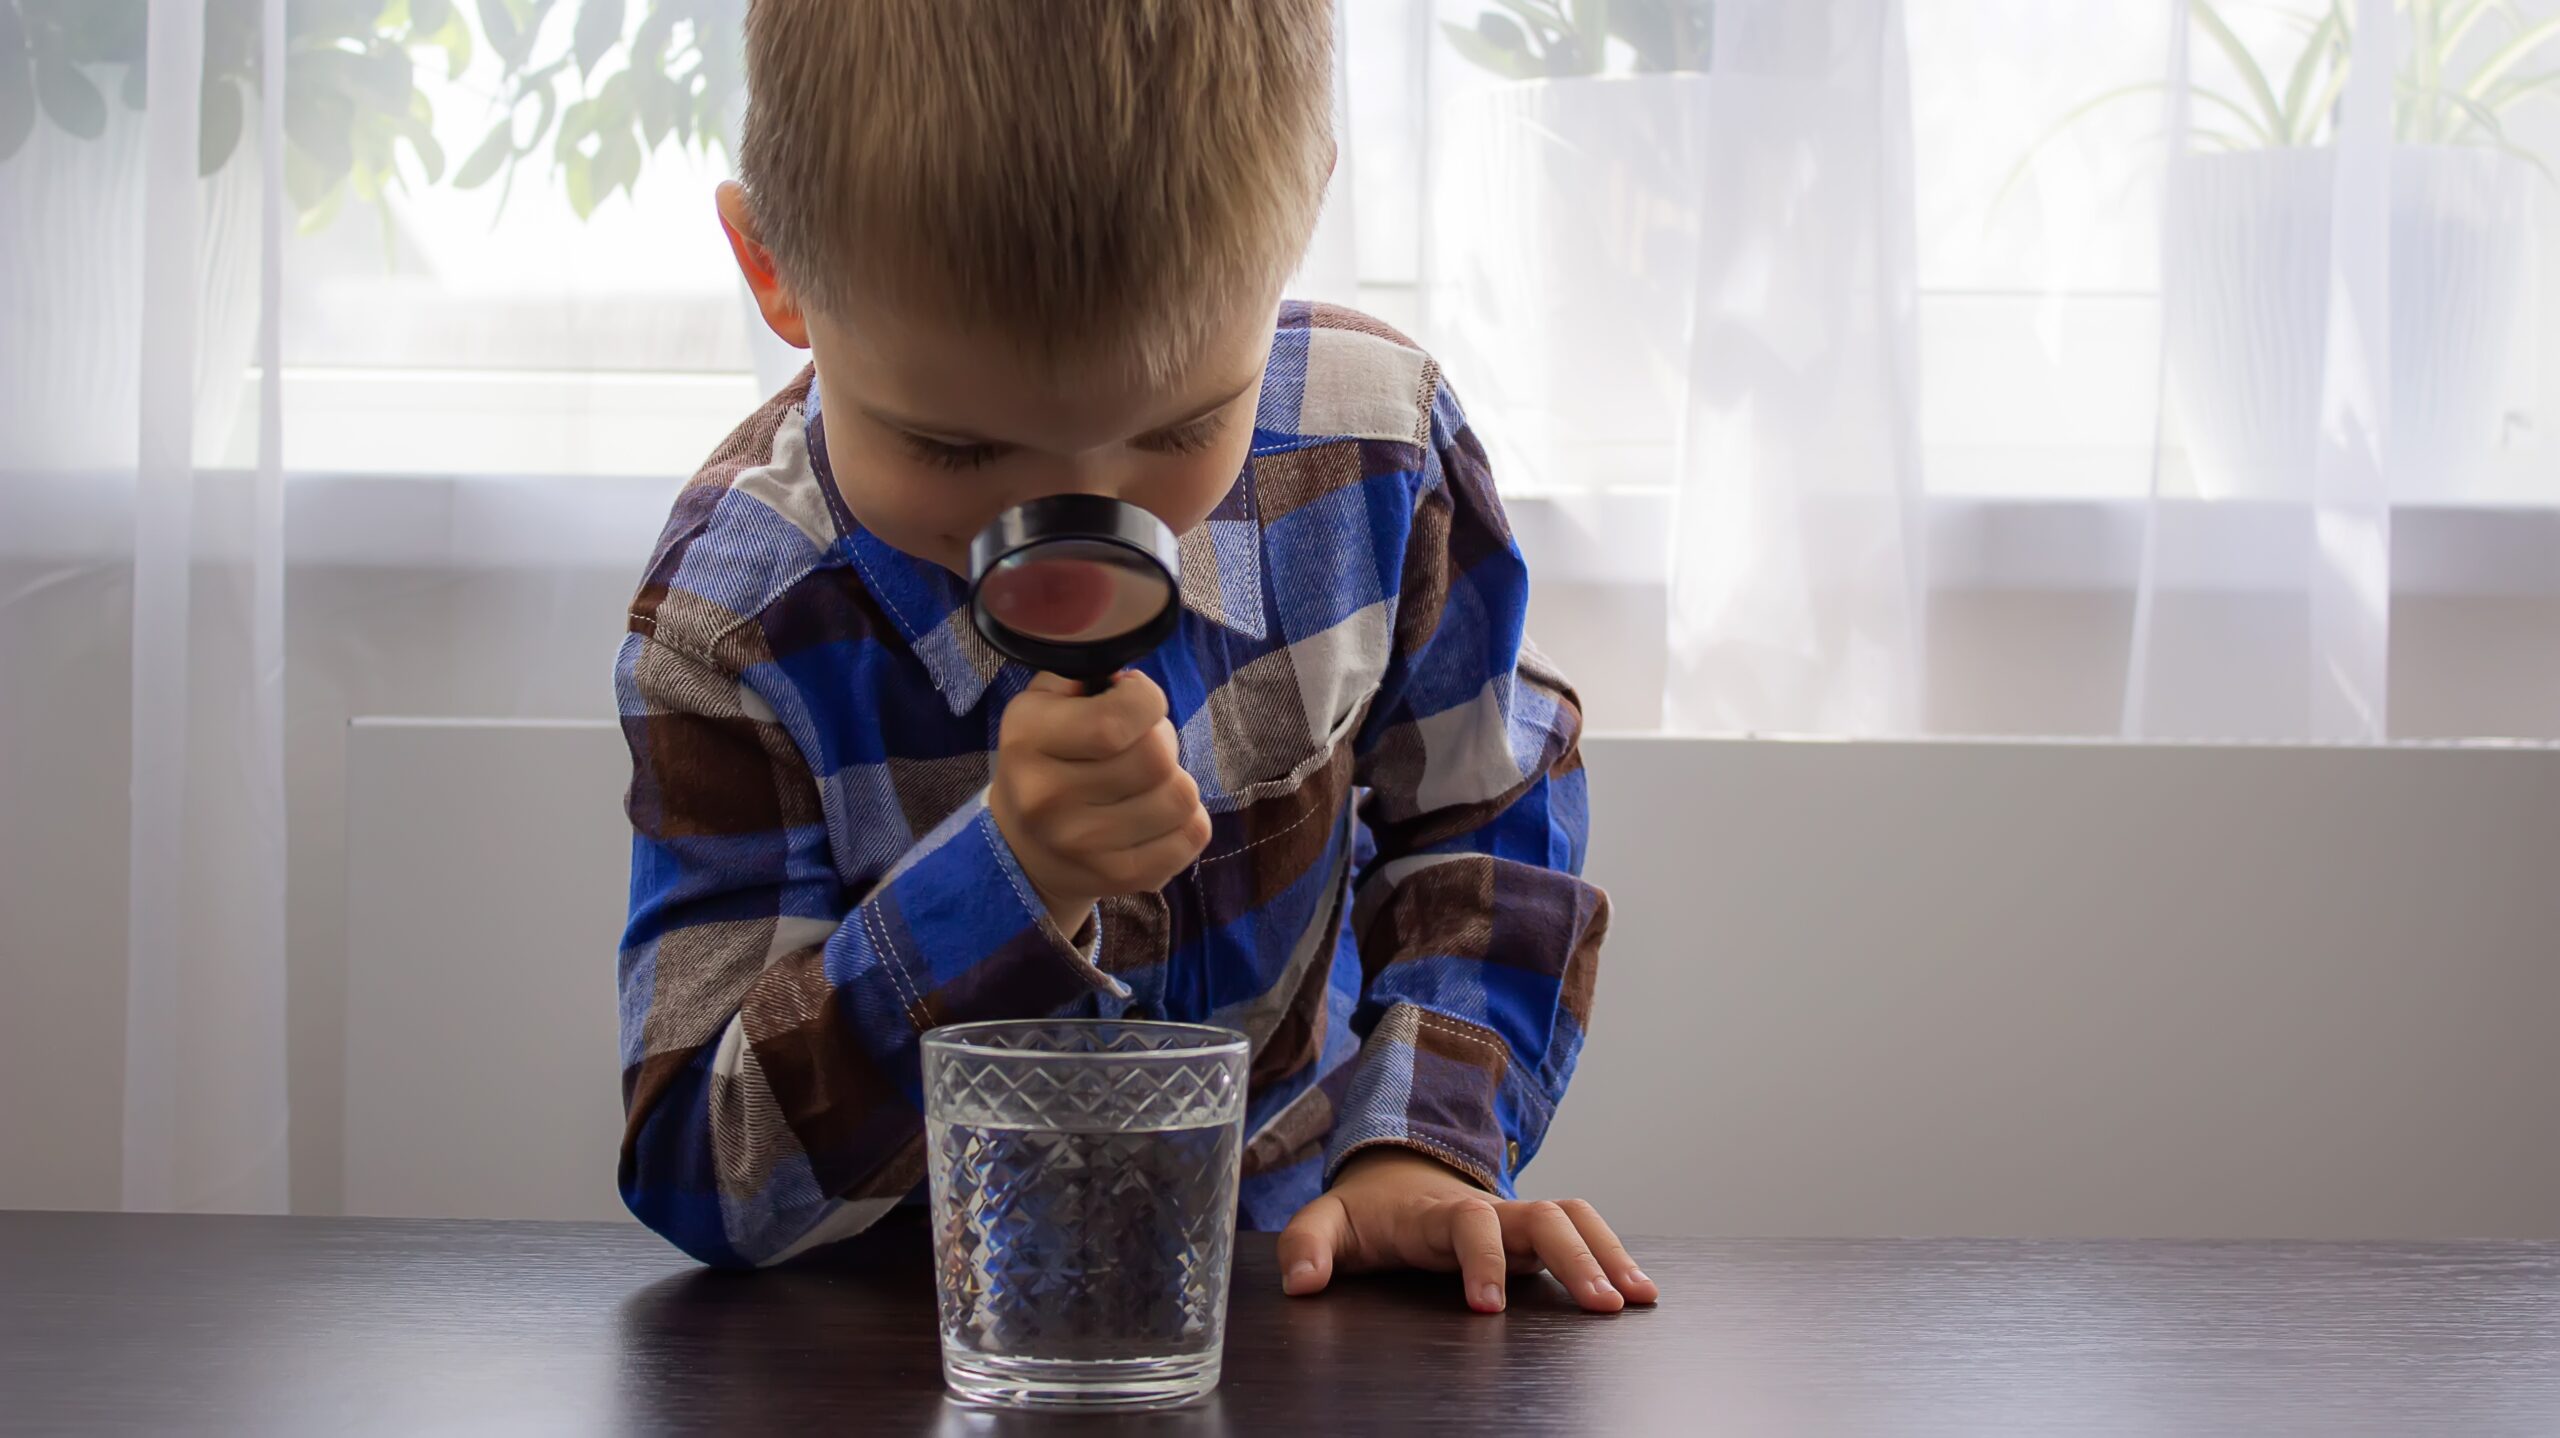 Kareli gömlekli erkek çocuk masa üzerinde duran su bardağındaki suya büyüteç ile bakıyor